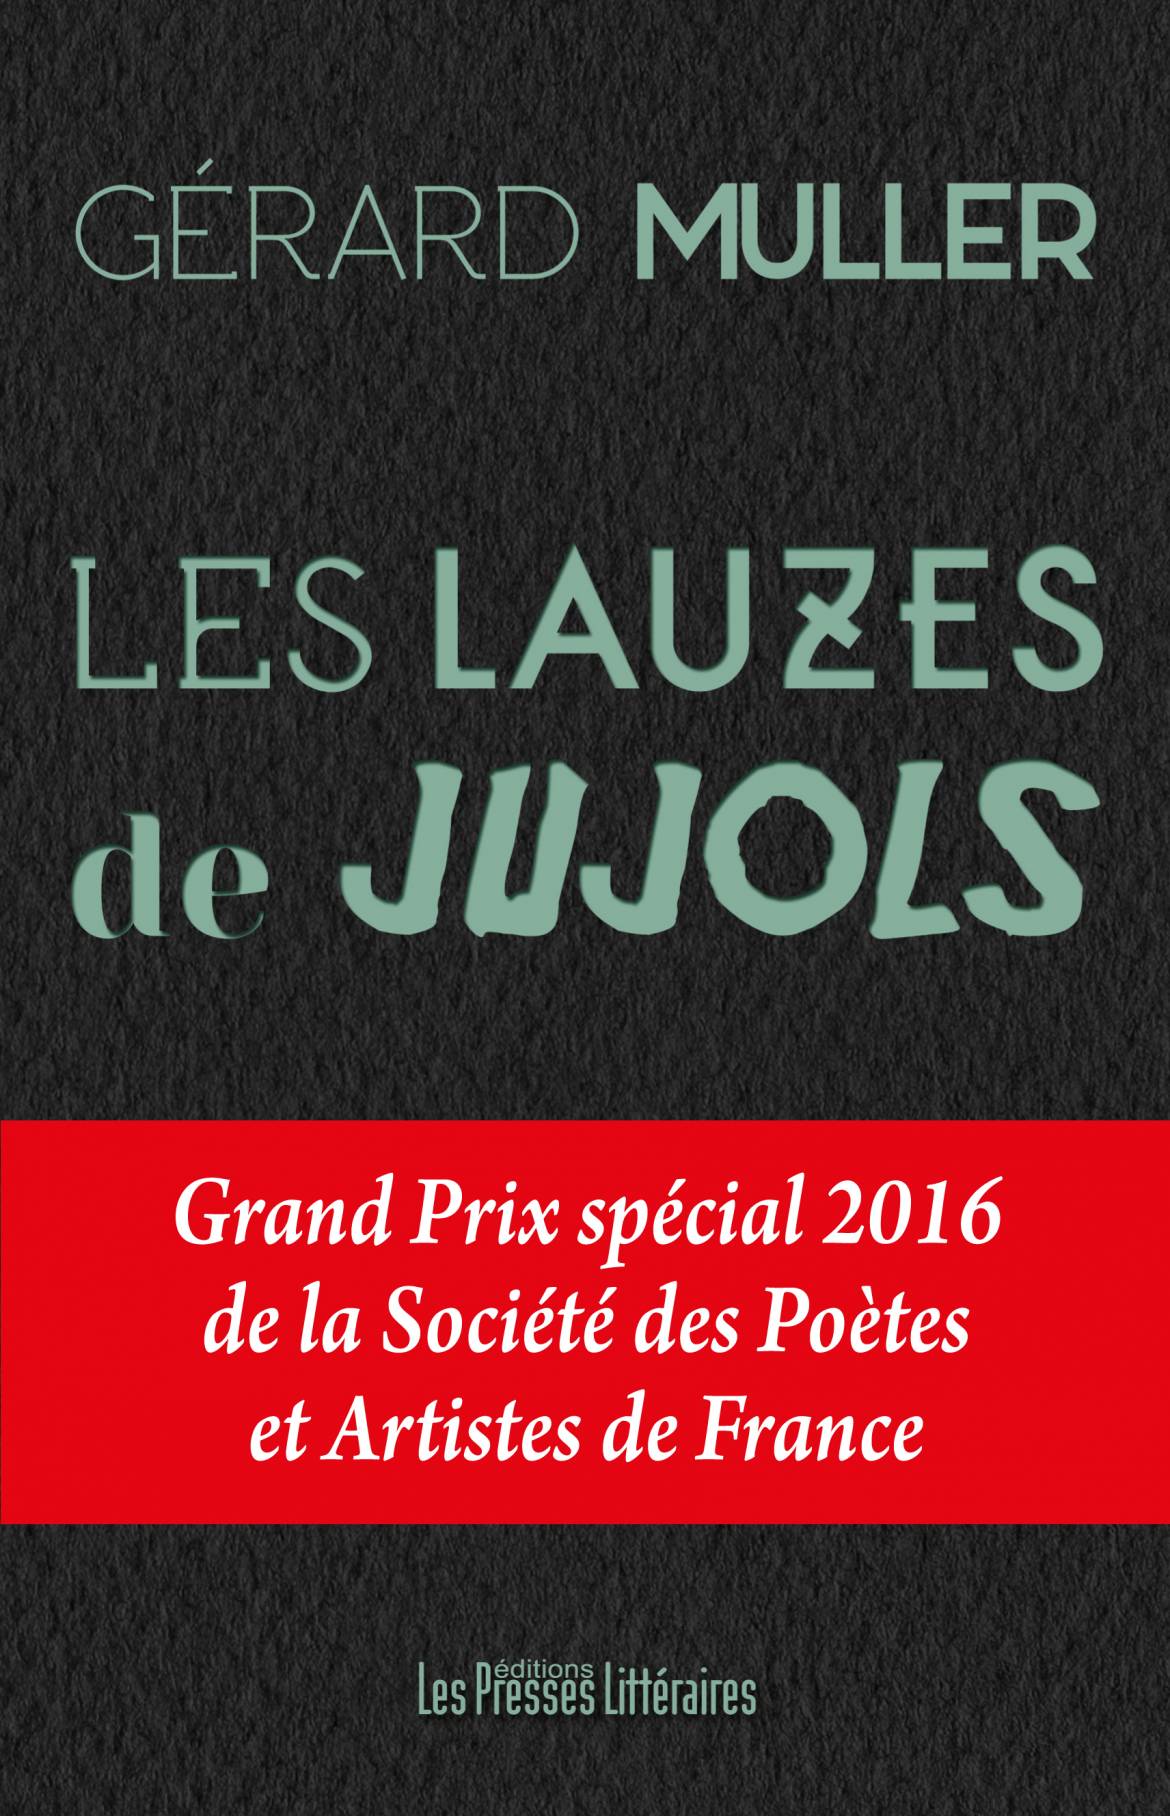 Les lauzes de Jujols   Grand Prix Roussillonnais des écrivains 2015 et Grand Prix spécial 2016 de la Société des Poètes et Artistes de France